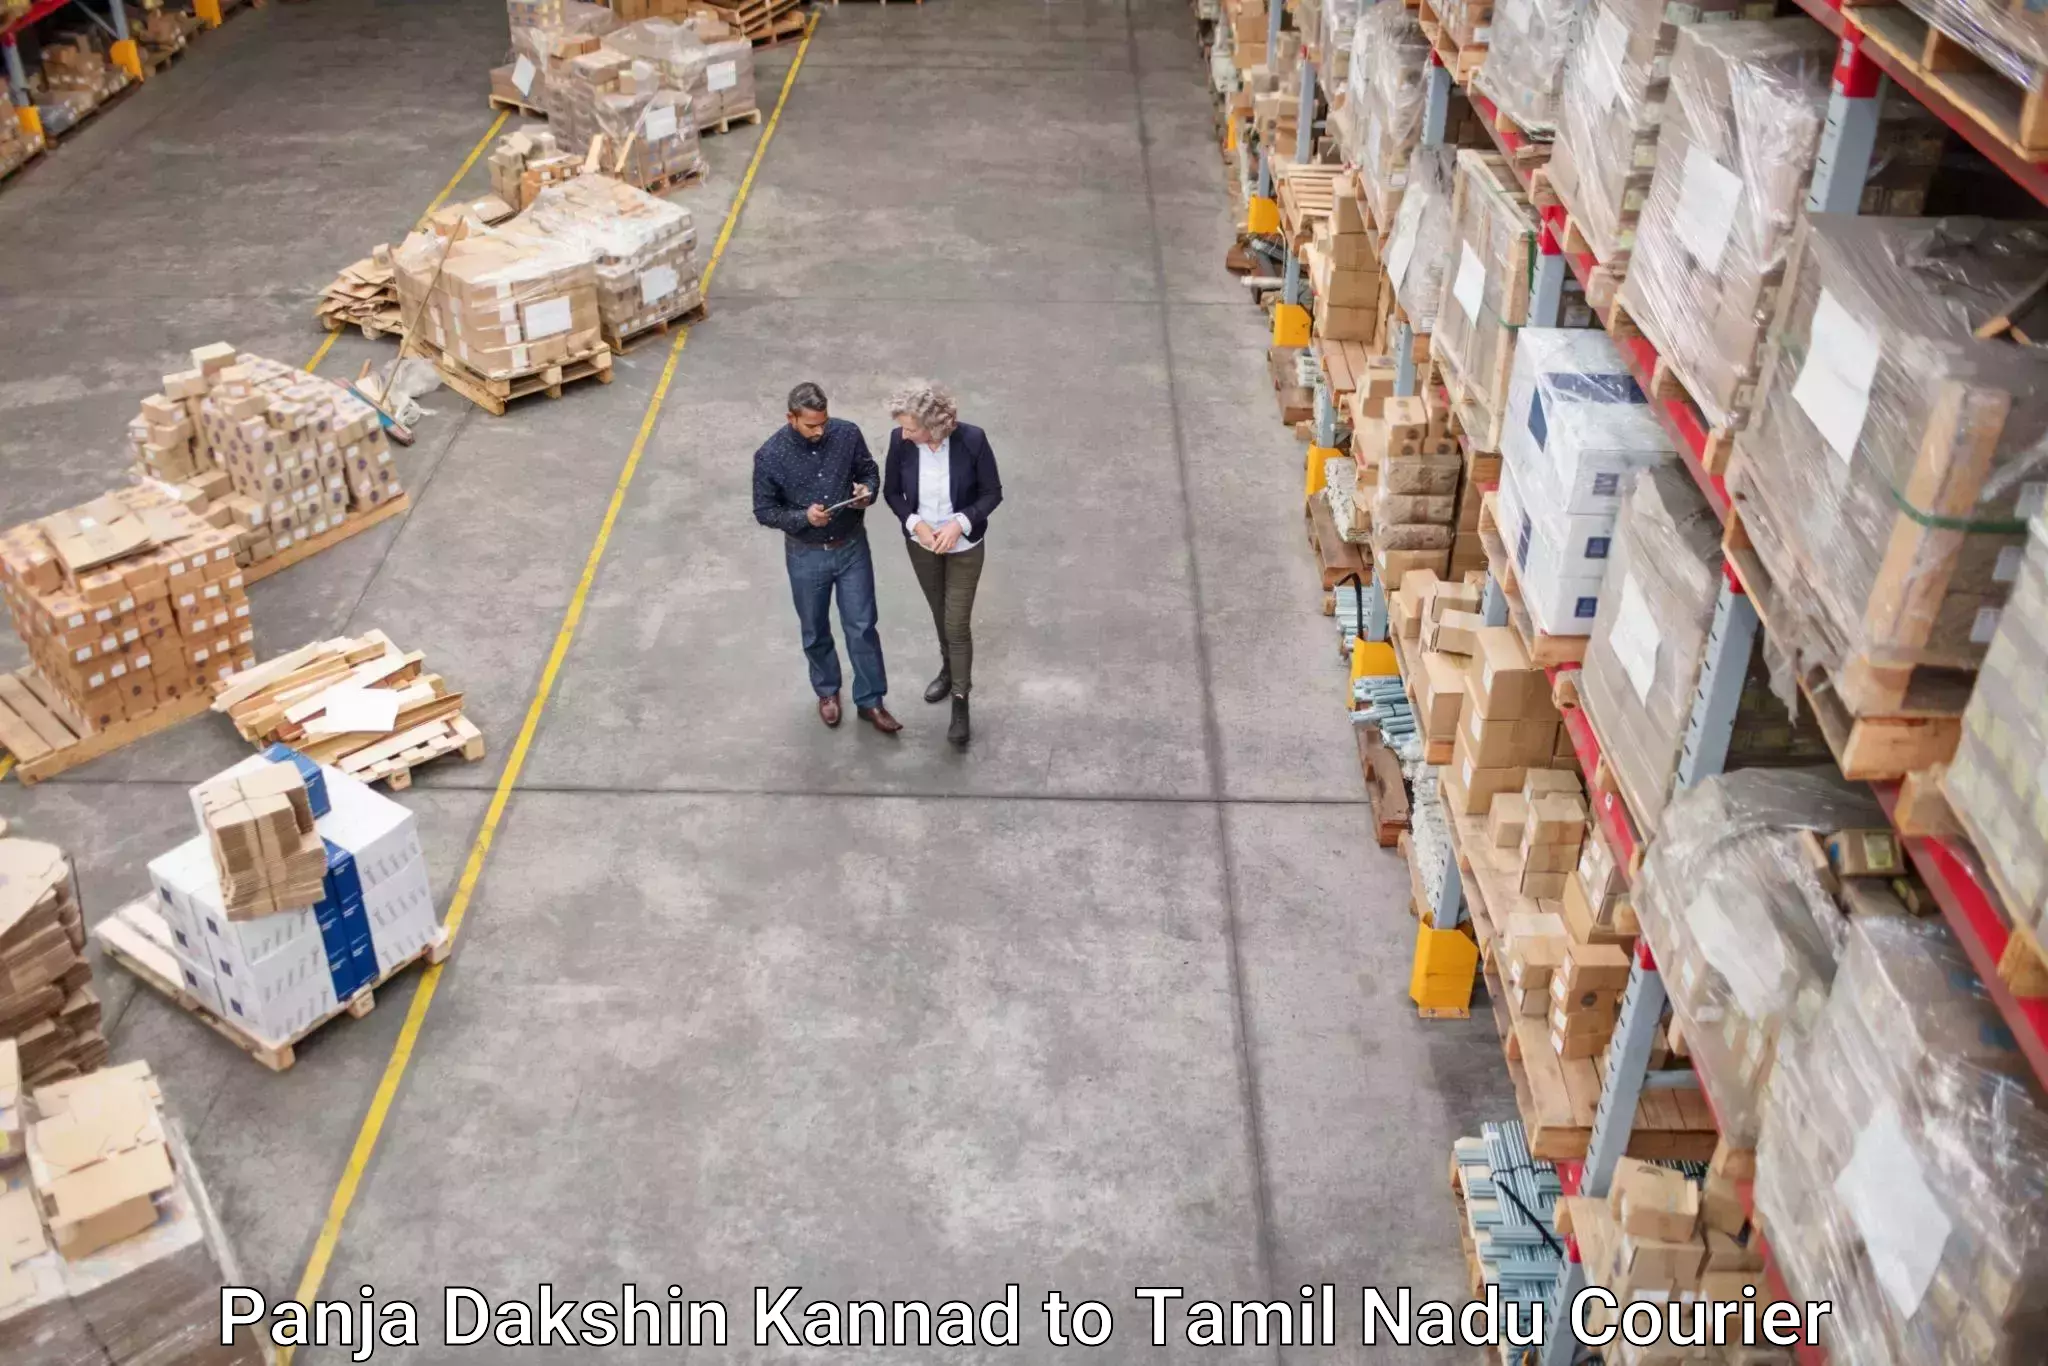 High-capacity parcel service Panja Dakshin Kannad to Tamil Nadu